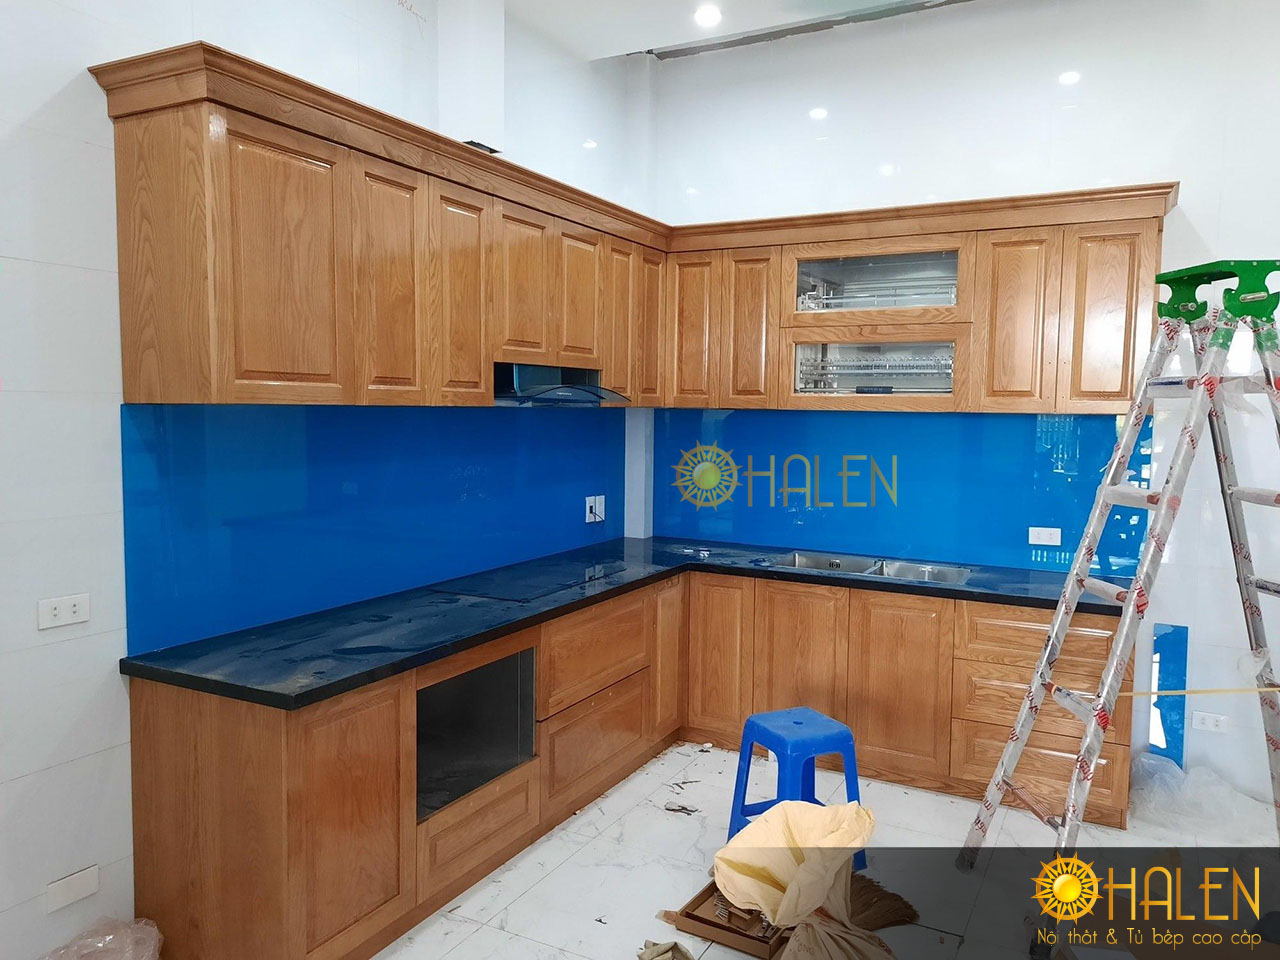 Bộ tủ bếp đã hoàn thiện để ban giao cho khách hàng - làm tủ bếp tại Kim Mã, Hà Nội